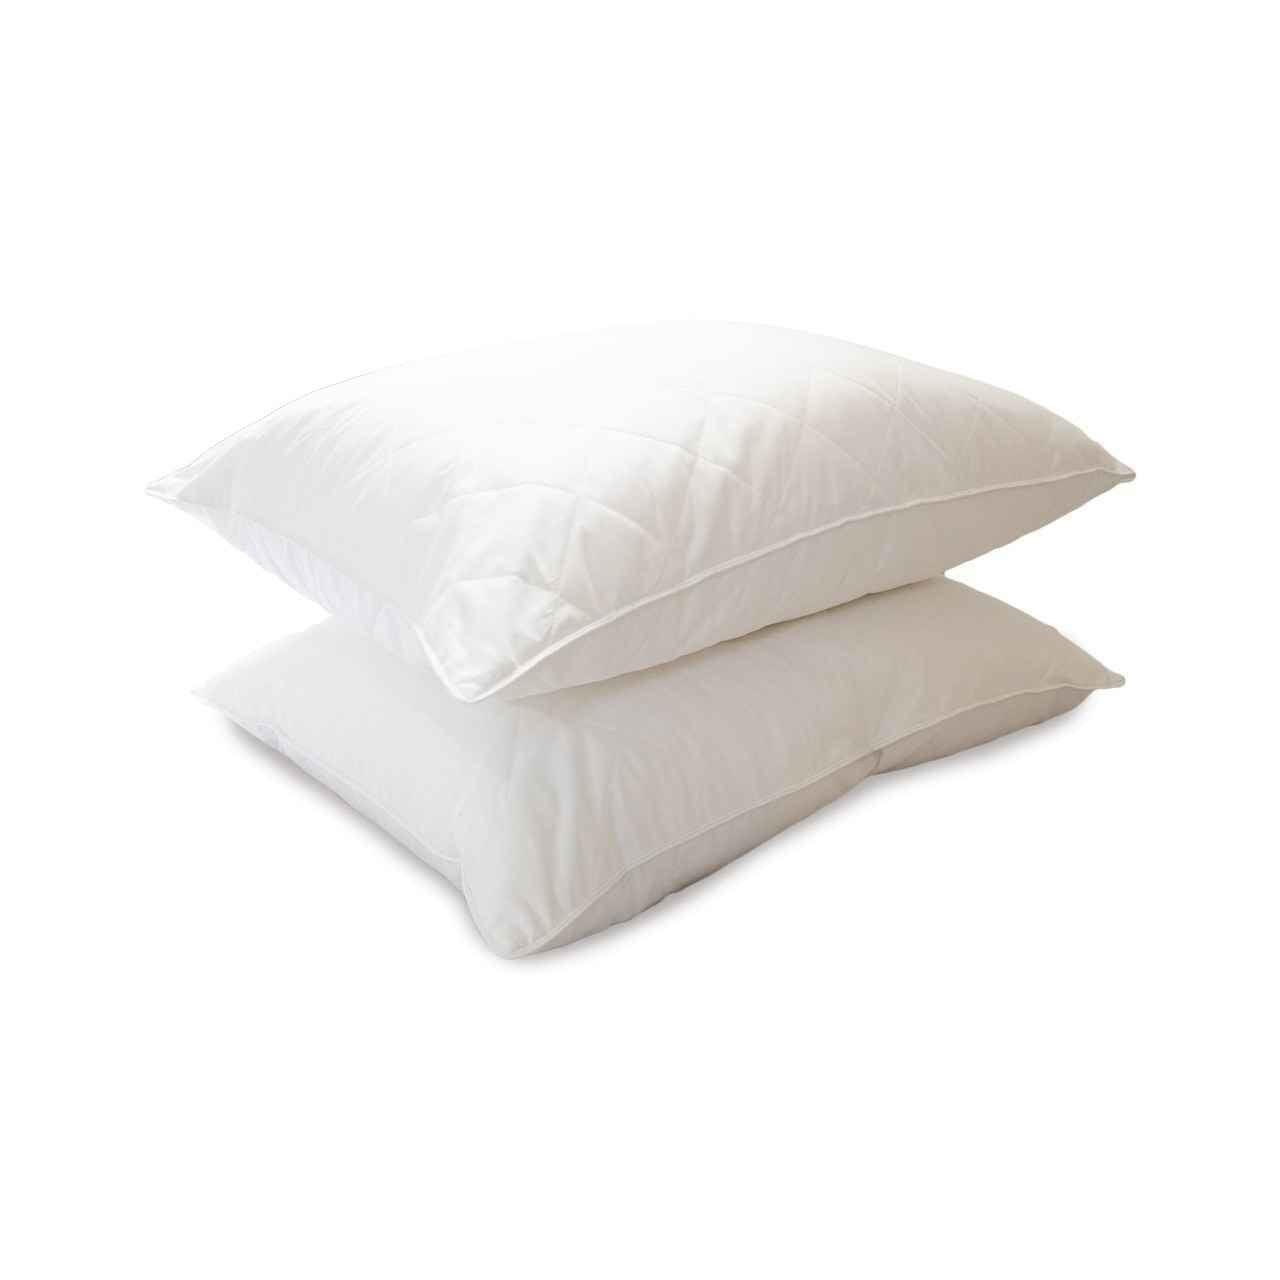 EddieBauer®/Pillow